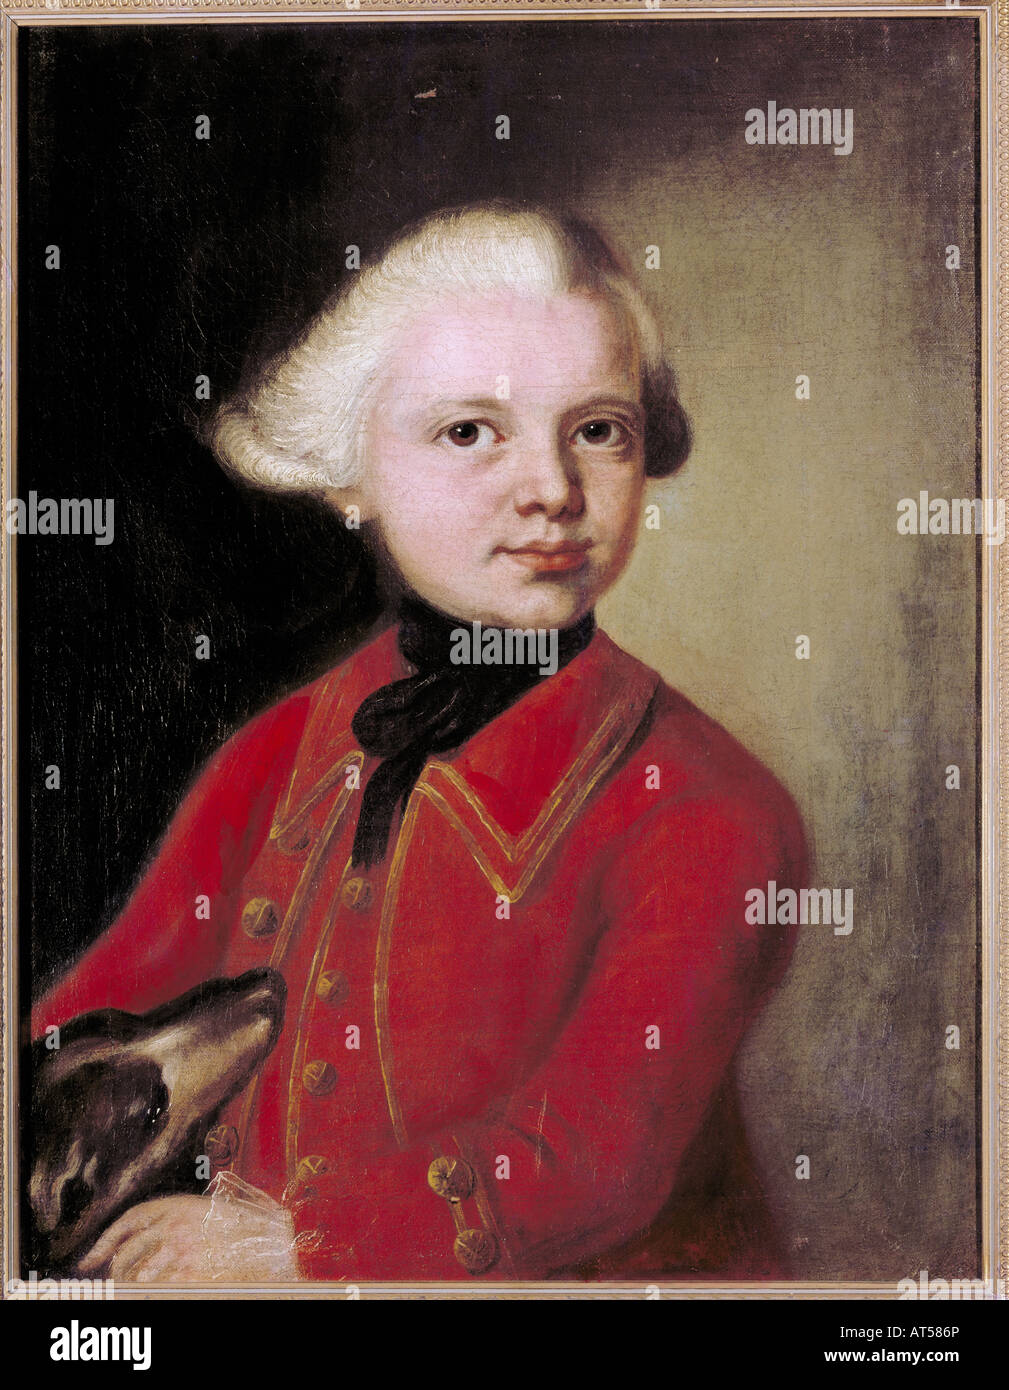 Belle arti, barocco, ragazzo in una giacca rossa, artista sconosciuto, pittura, circa 1750, olio su tela, Stadtmuseum, Monaco di Baviera, , artista del diritto d'autore non deve essere cancellata Foto Stock